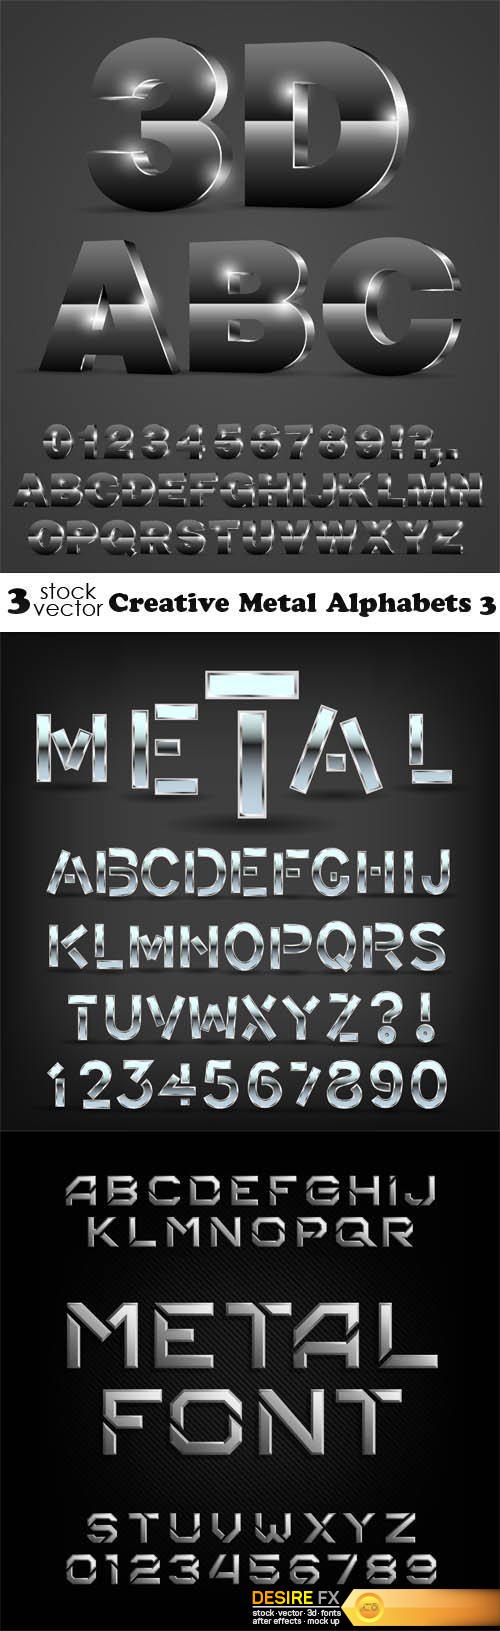 Vectors - Creative Metal Alphabets 3